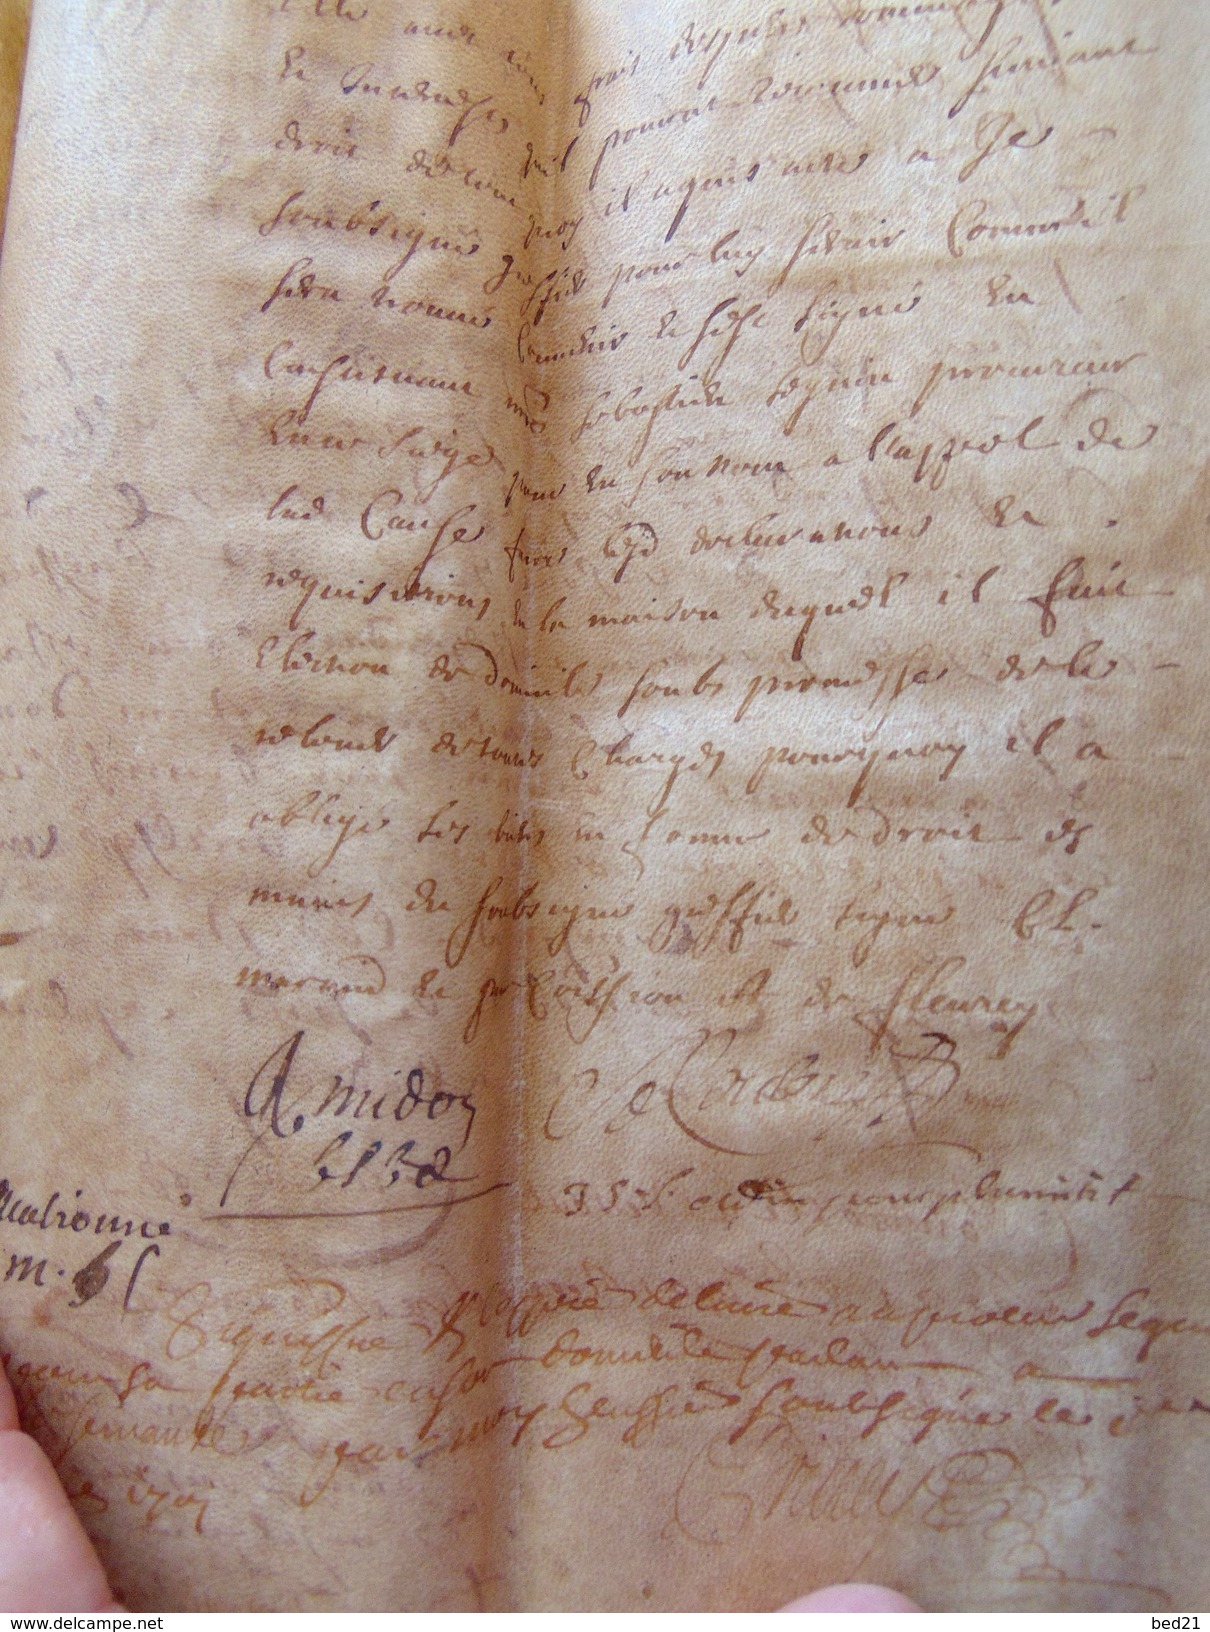 1701 PARCHEMIN EN PEAU TANNE A DECHIFFRER - Manuscrits